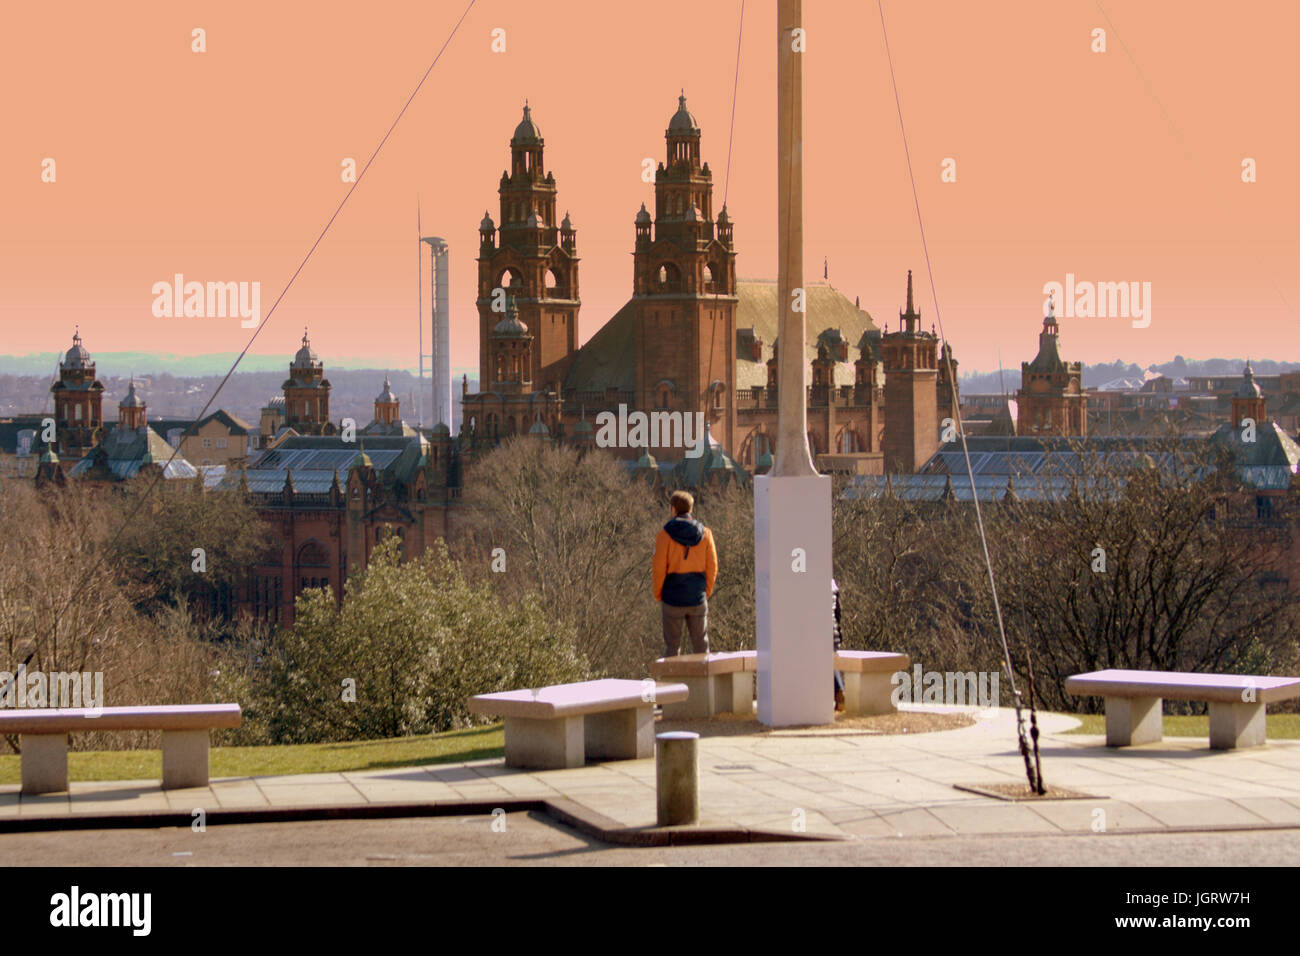 Der University of Glasgow, Scotland, UK-Studenten auf dem Campus Gelände Panoramablick vom Fahnenmast Stockfoto